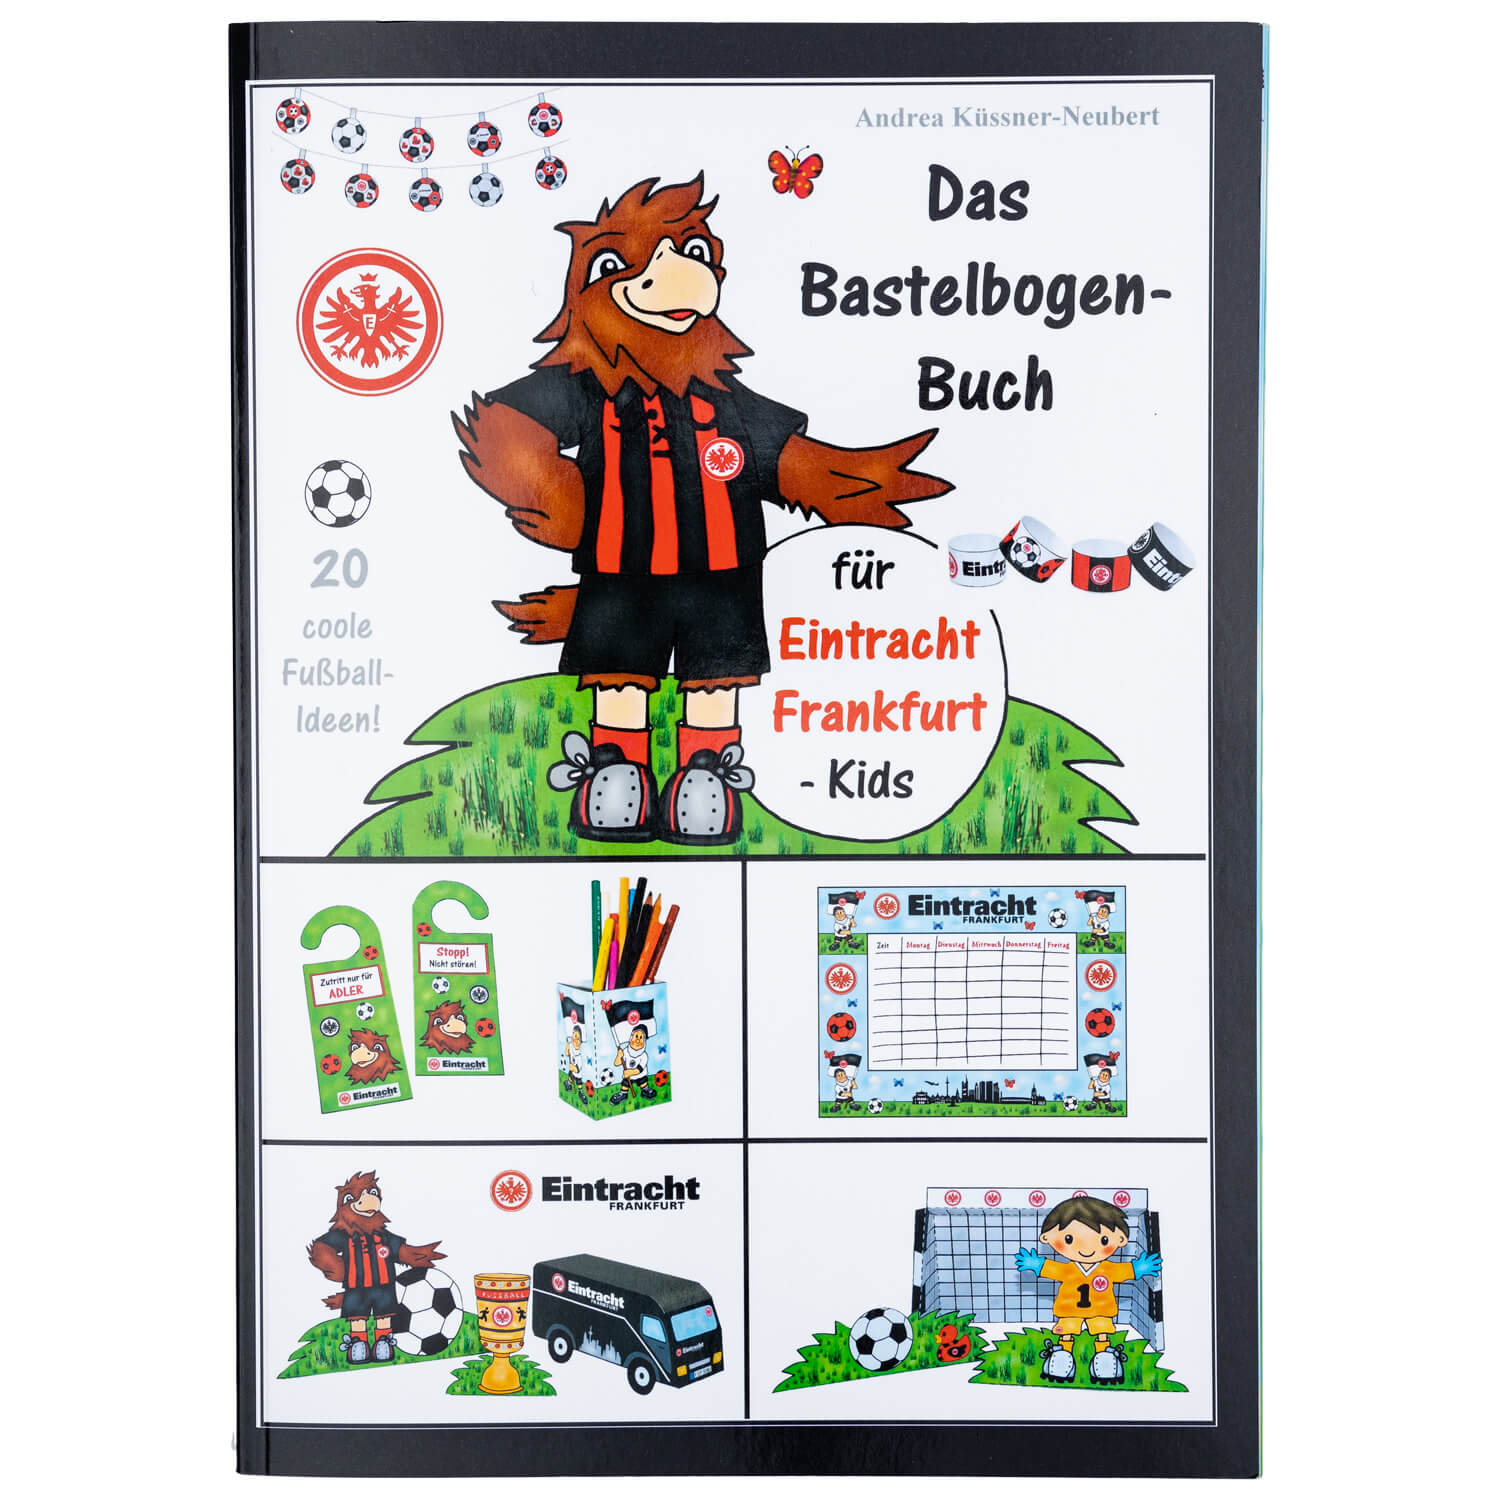 Bild 1: Das Bastelbogen-Buch Eintracht Frankfurt